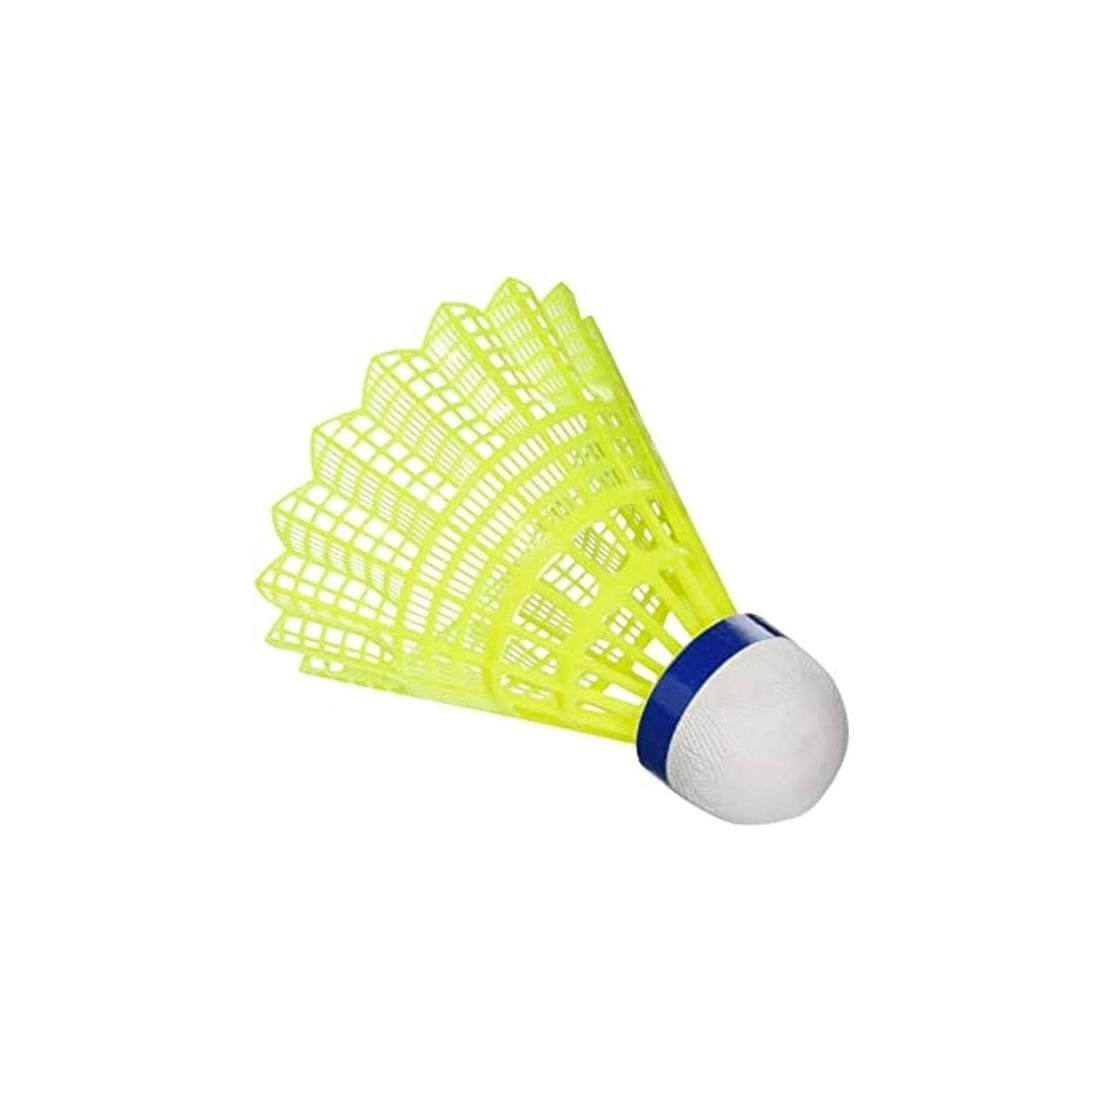 Peteca Badminton de Nylon e Espuma A100 Pack 6 Unidades Aoliante - Amarelo